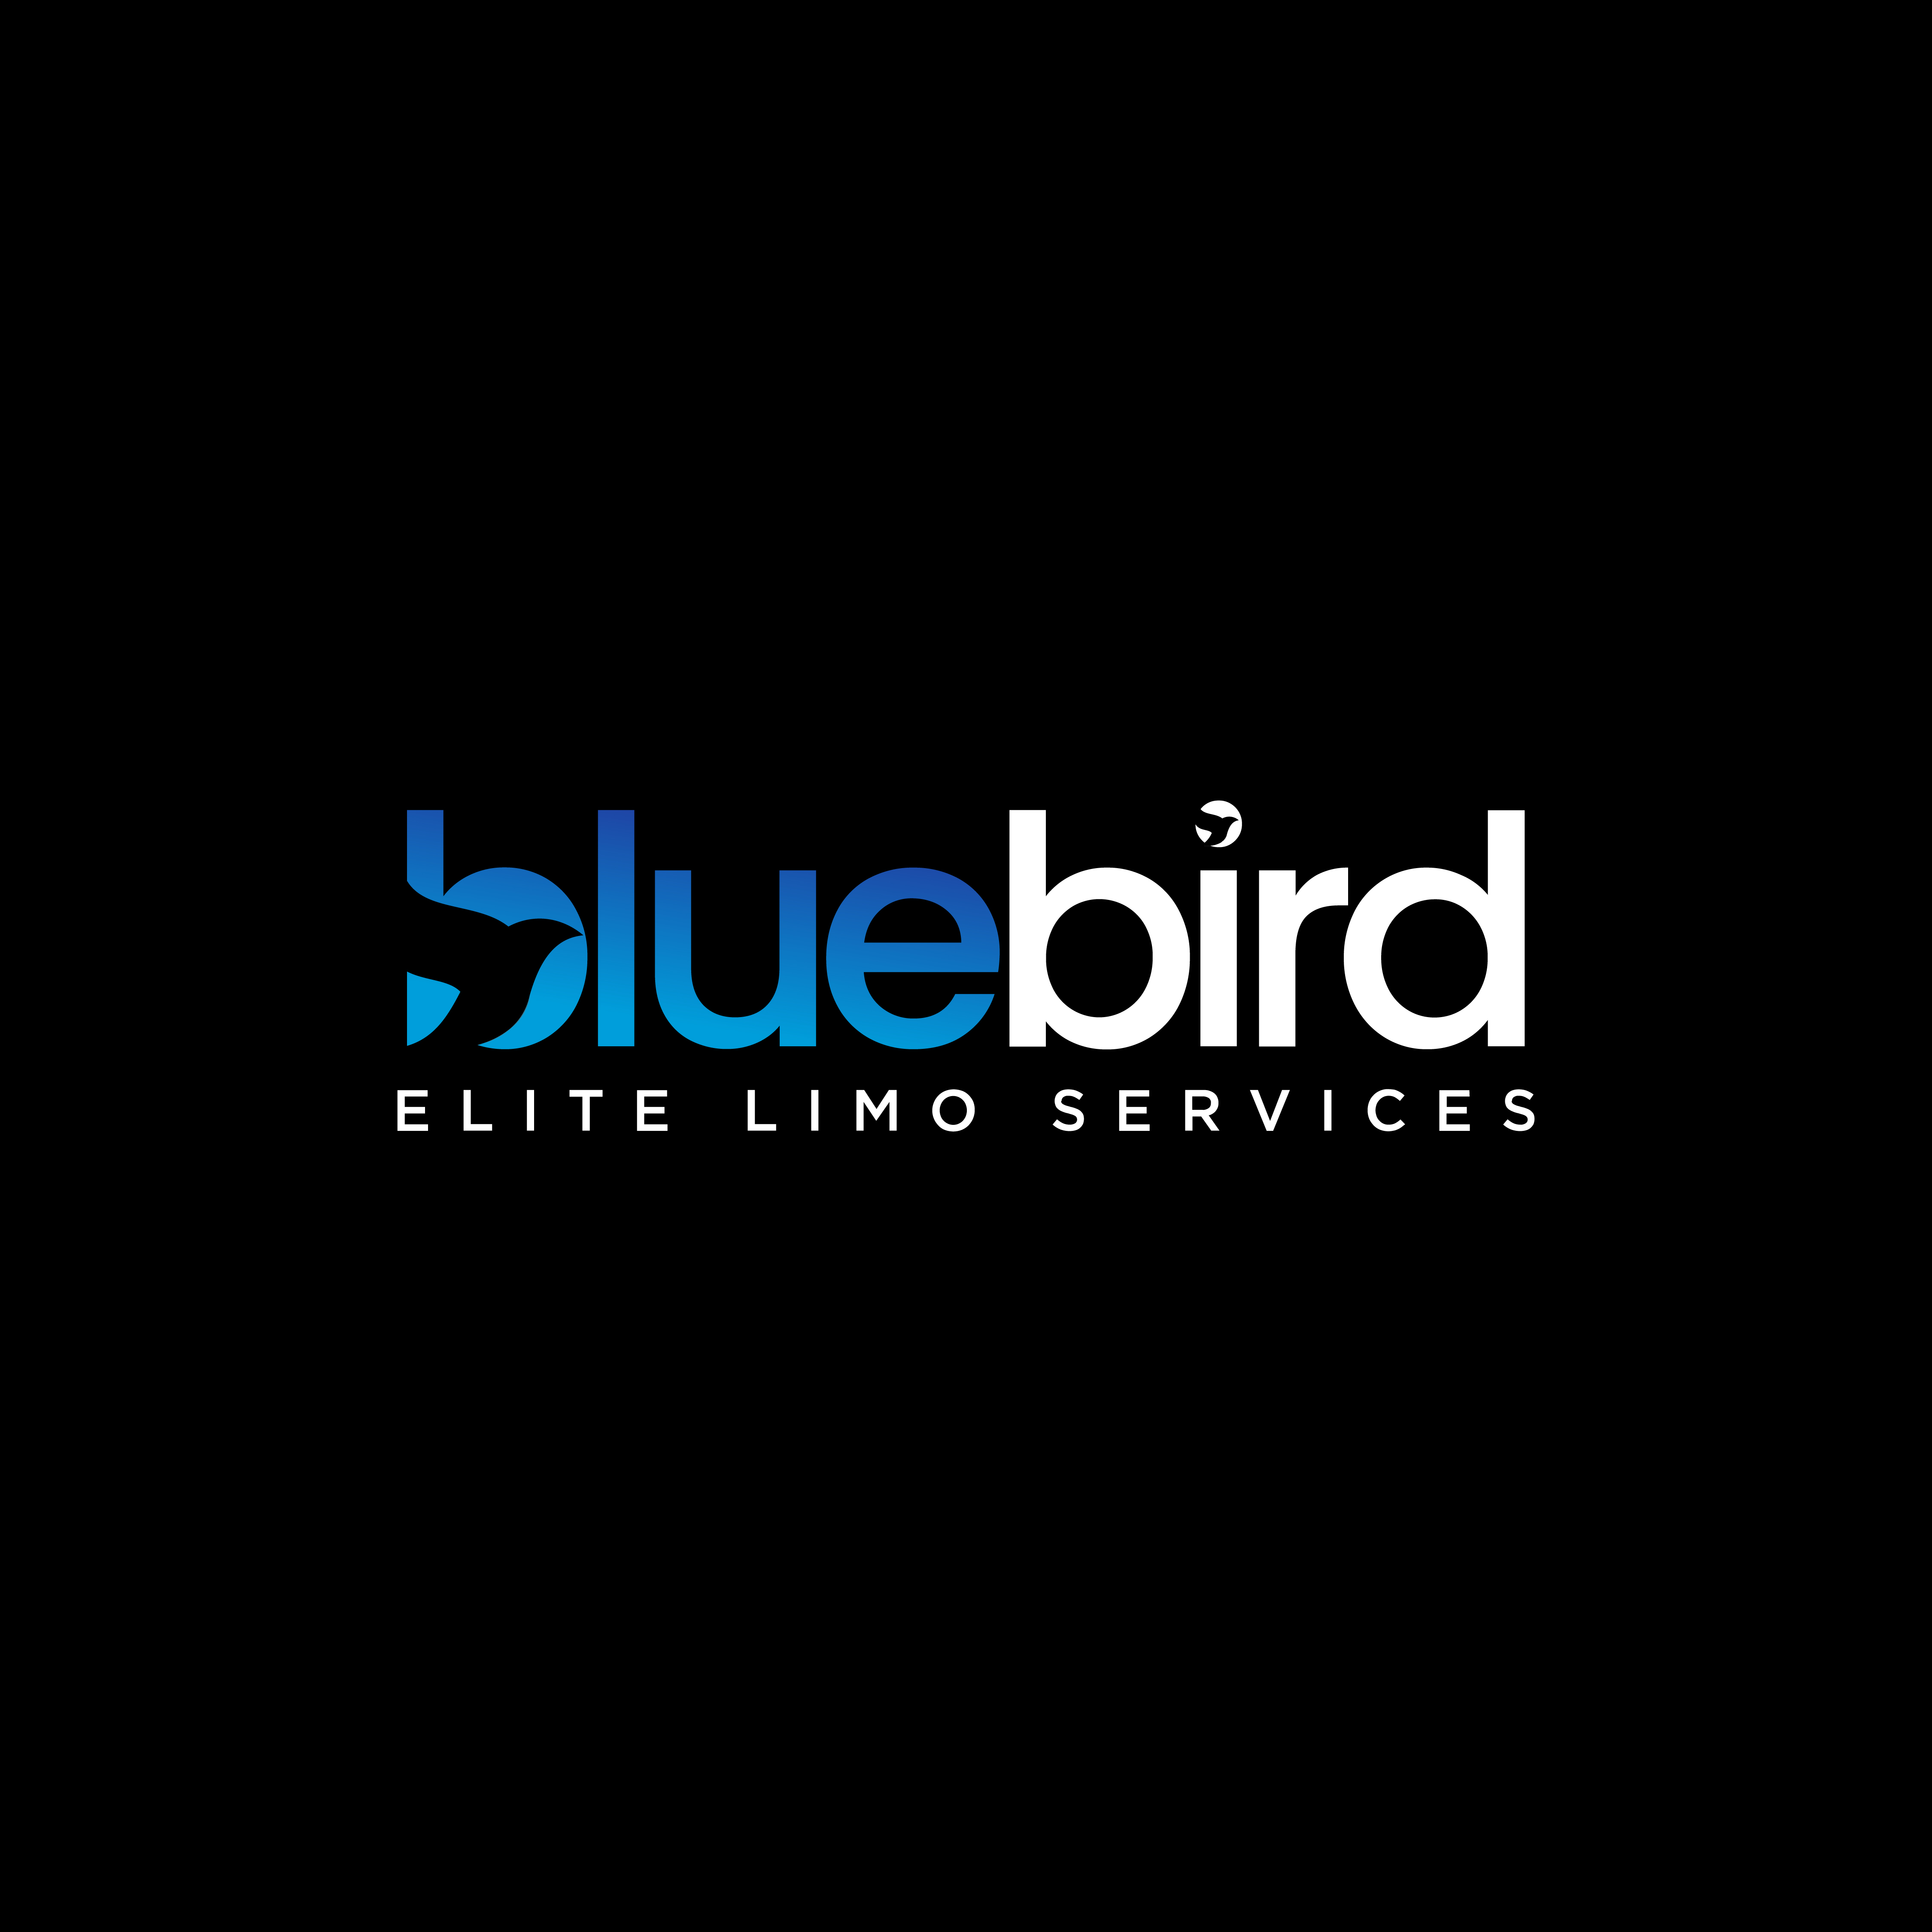 Blue Bird Limollc